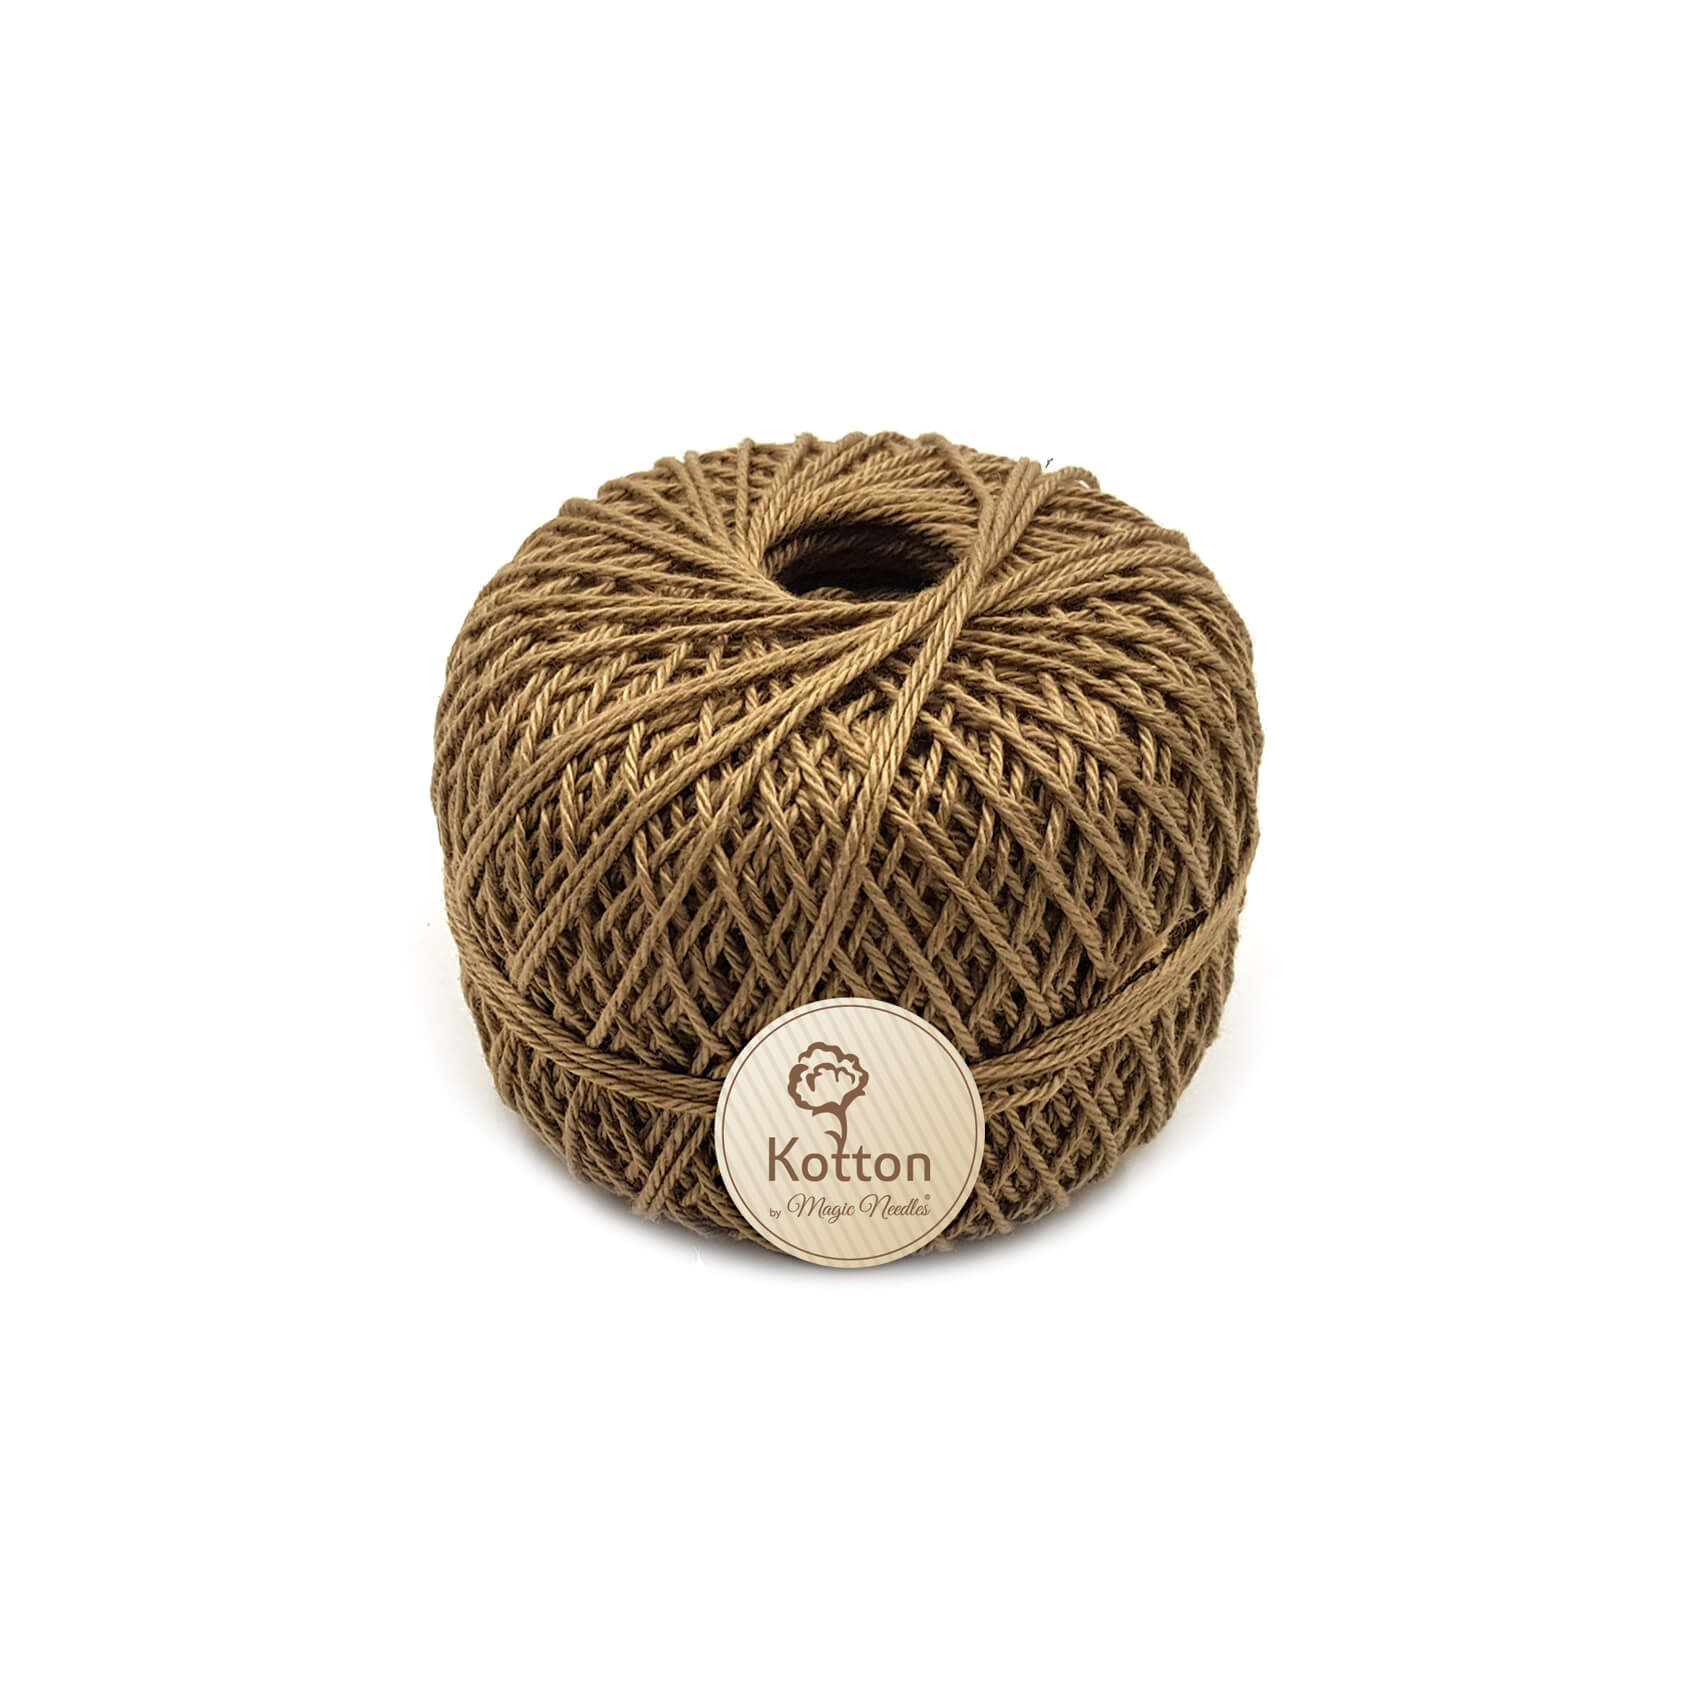 Kotton 3 ply Mercerised Cotton Yarn - Khaki 20